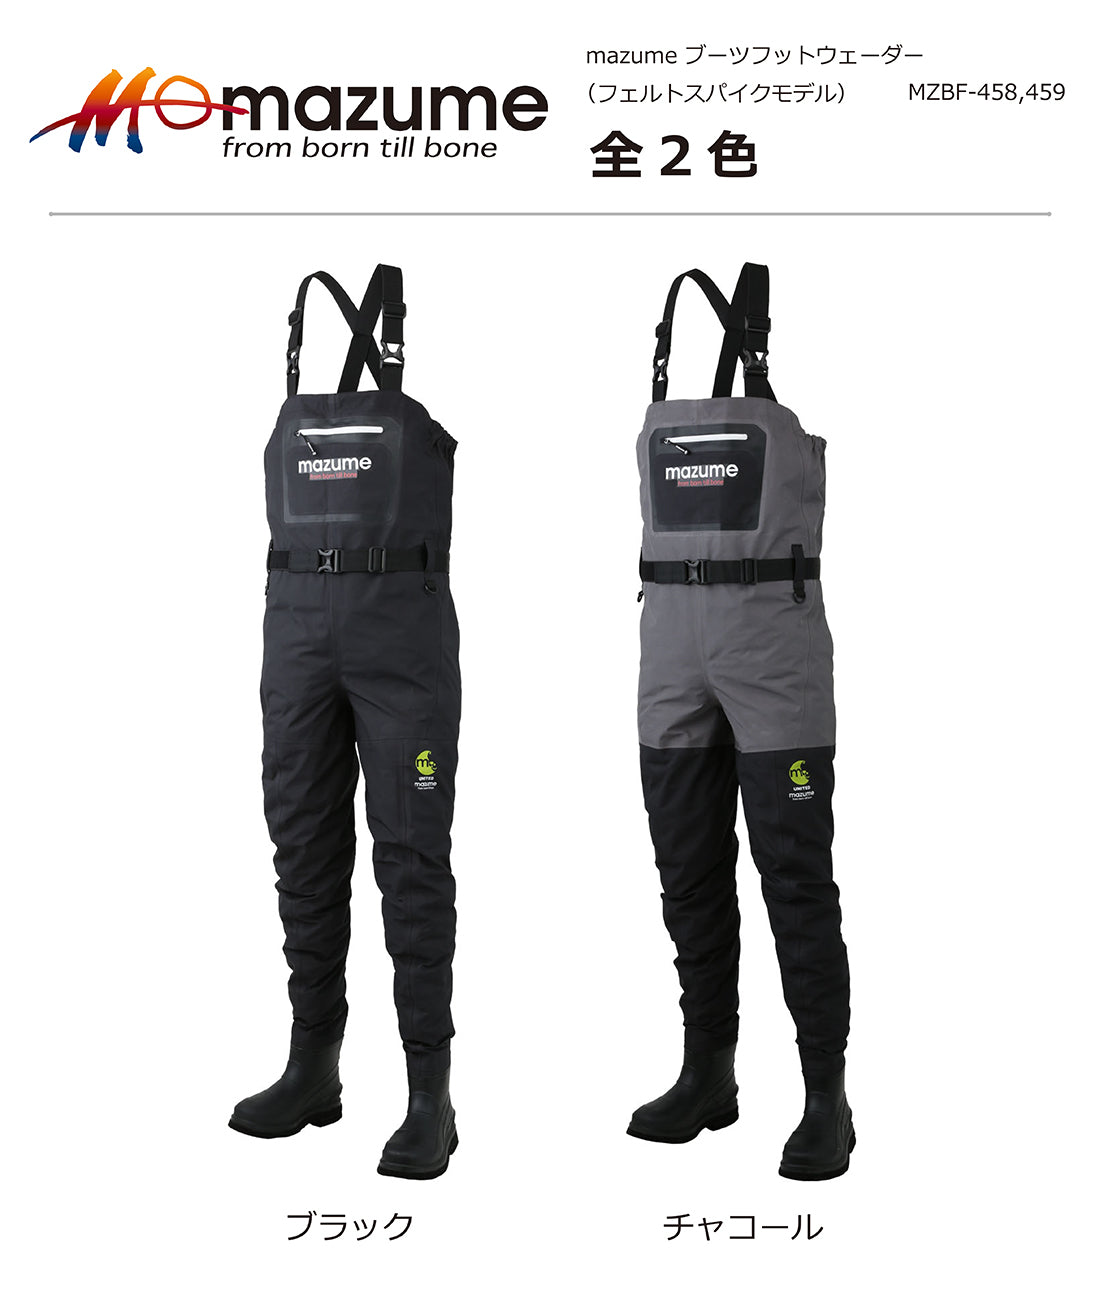 mazume mazume MZBF-459 ブーツフットウェーダー フェルトスパイク チャコール L